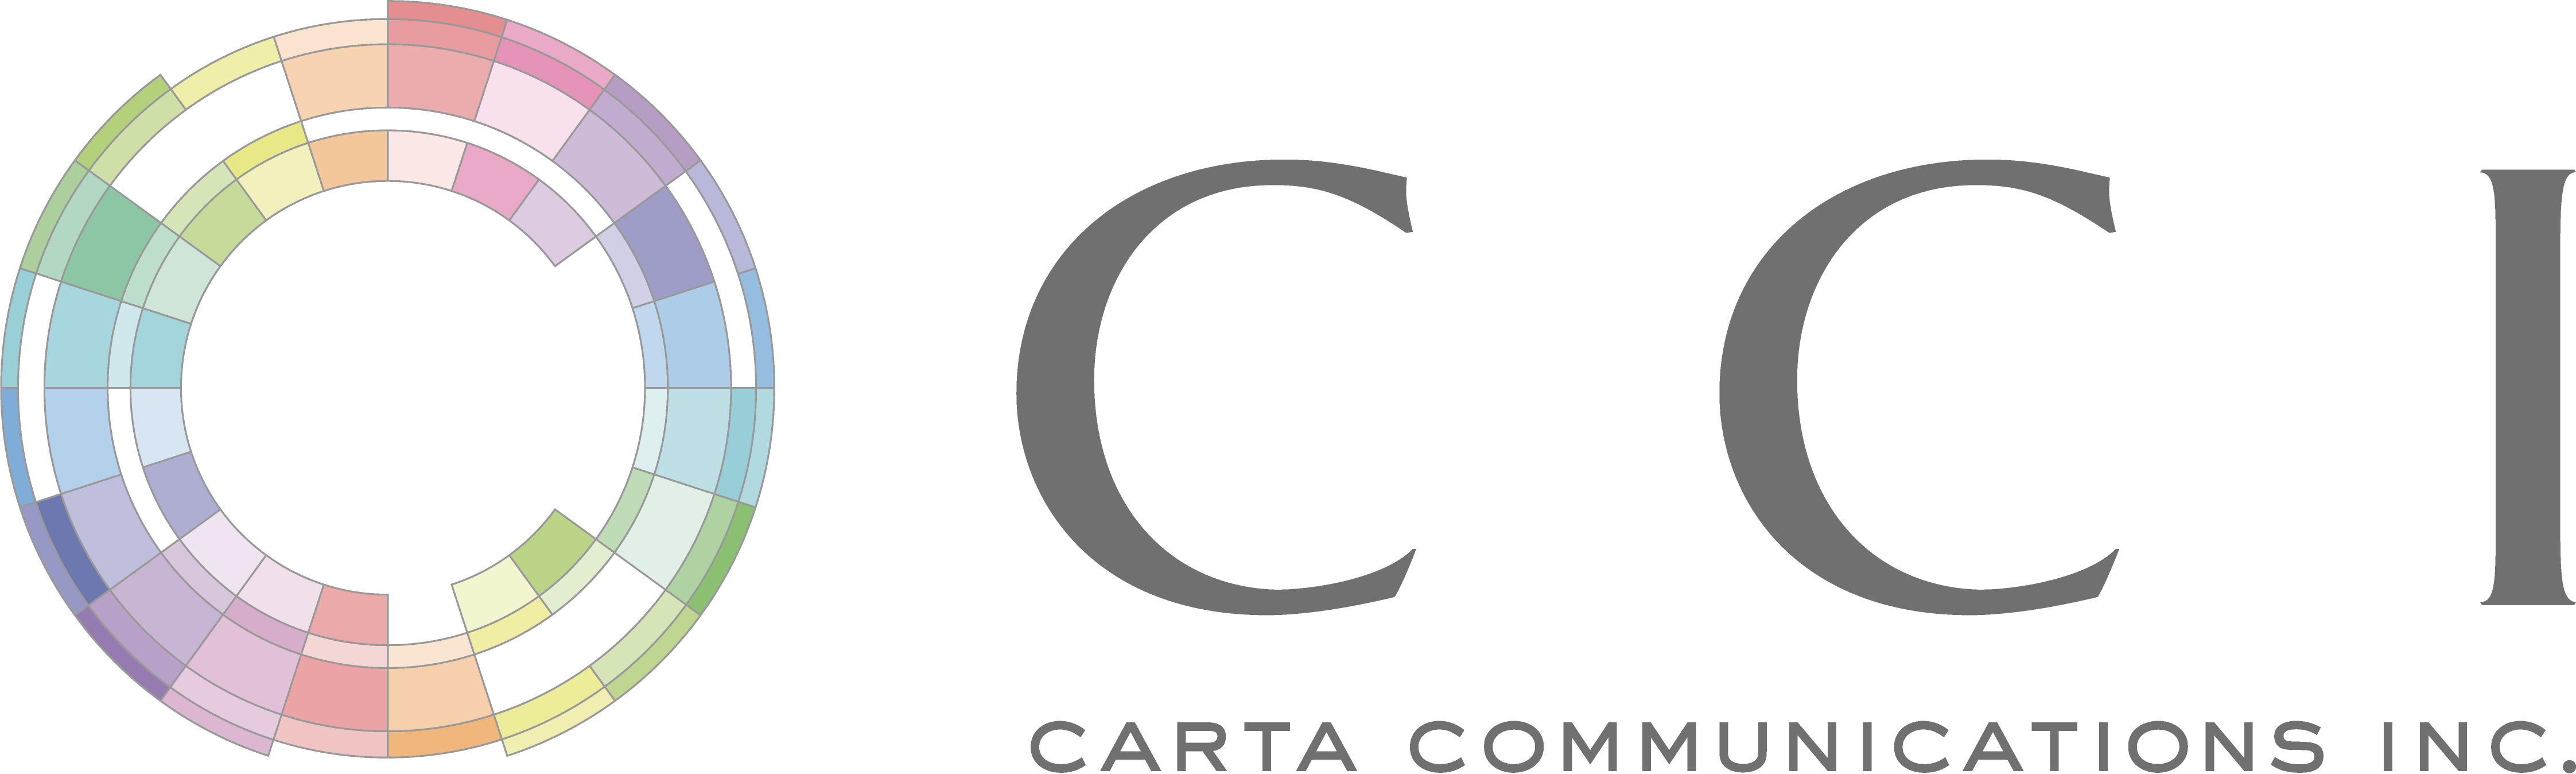 CARTA COMMUNICATIONS INC.